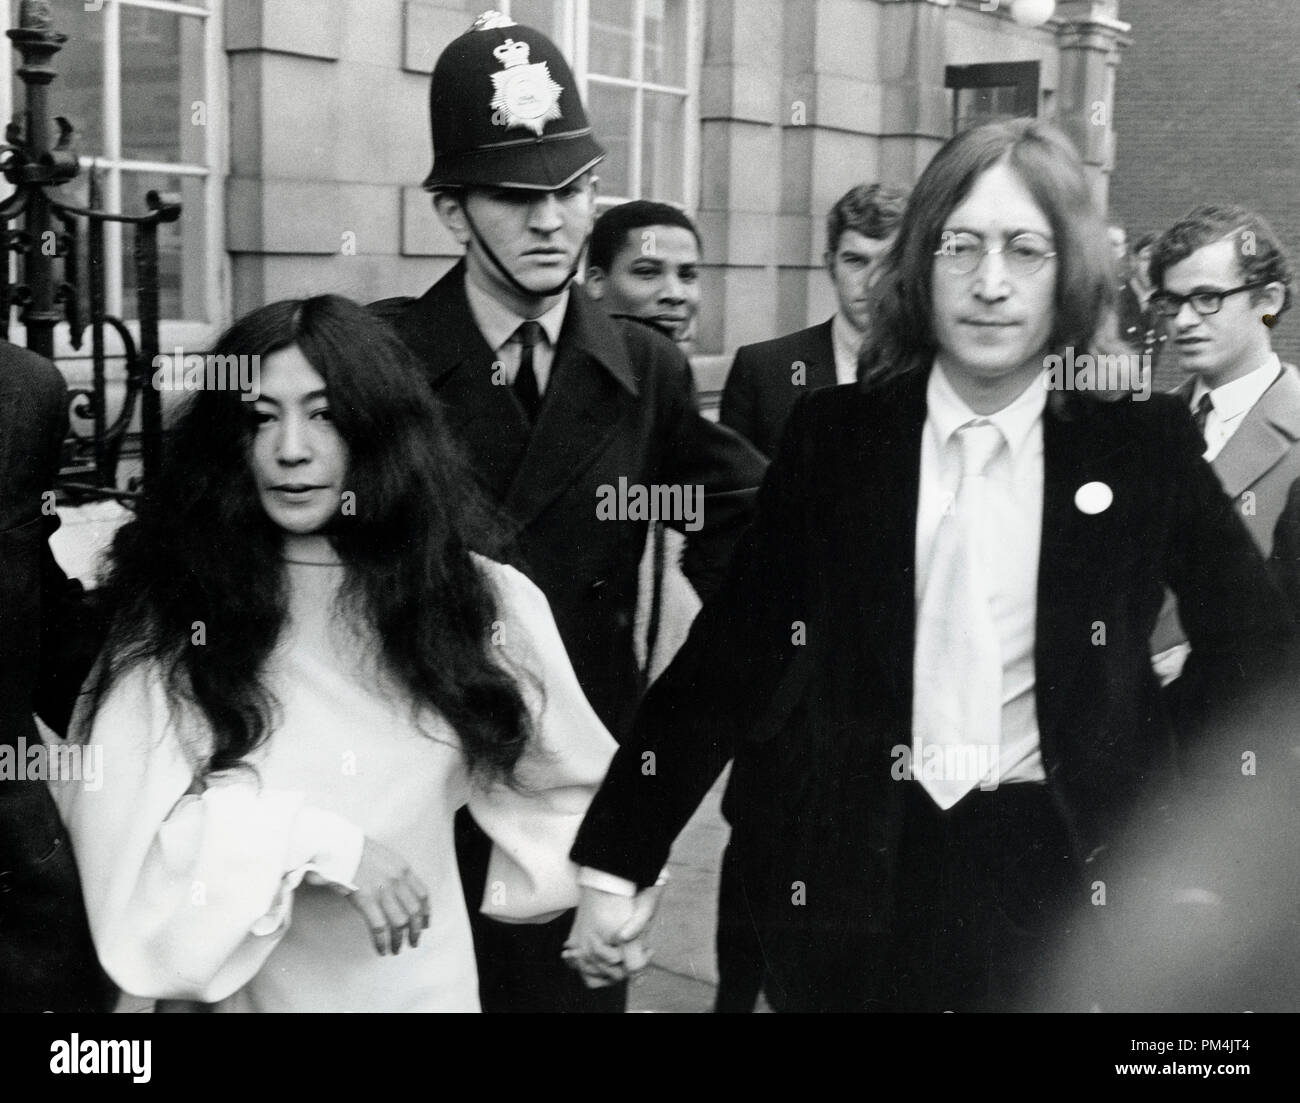 John Lennon et Yoko Ono à Londres, novembre 2222. Référence # 1013 Fichier 033 THA © CCR /Le Hollywood Archive - Tous droits réservés. Banque D'Images